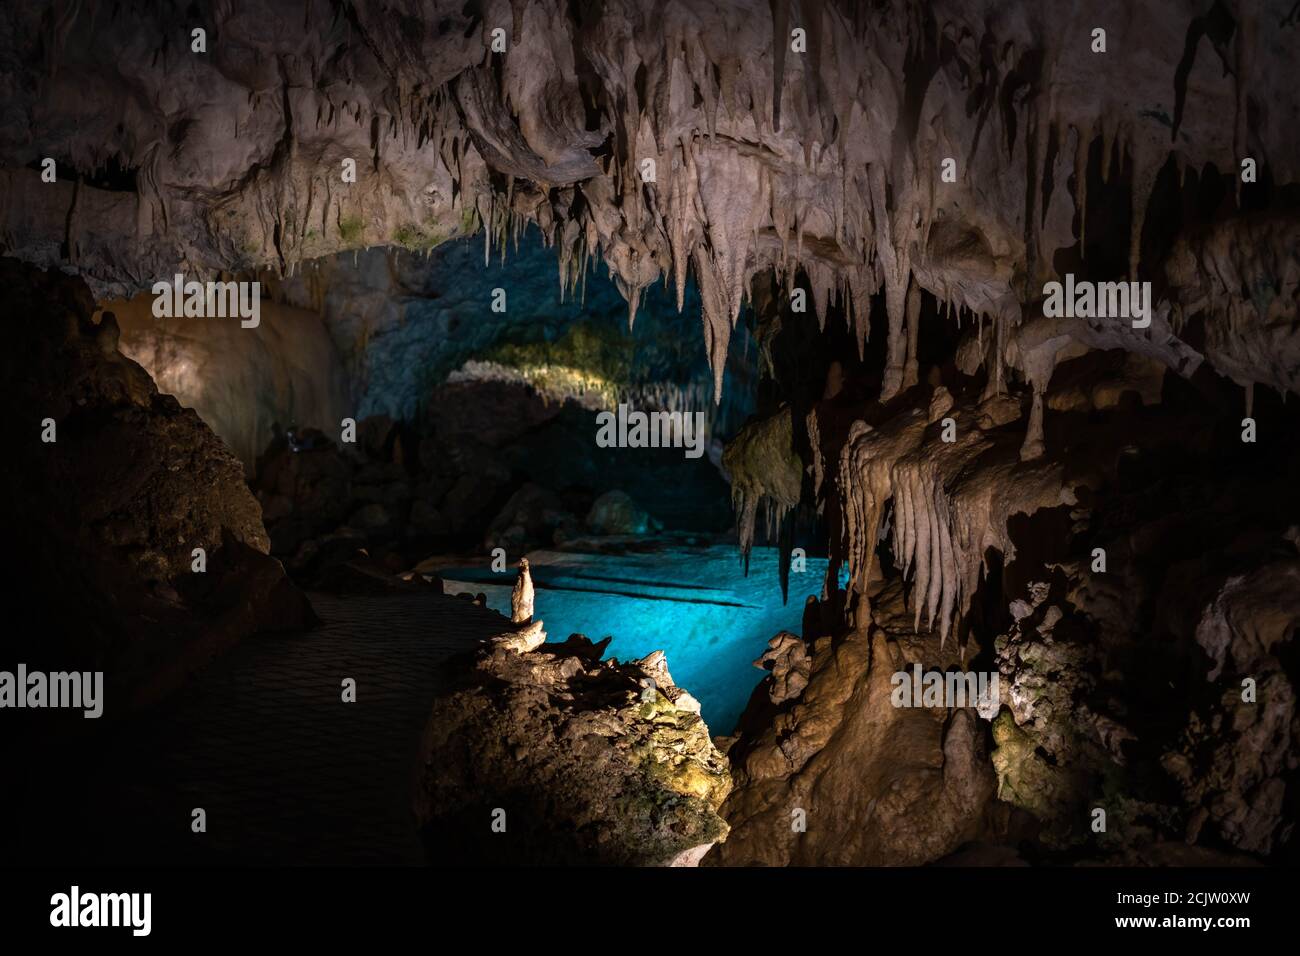 La Grotta di Anemoptera si trova nei pressi del villaggio di Pramanda, con i suoi abbondanti giacimenti di stalagmiti e cascate sotterranee e laghi. Foto Stock